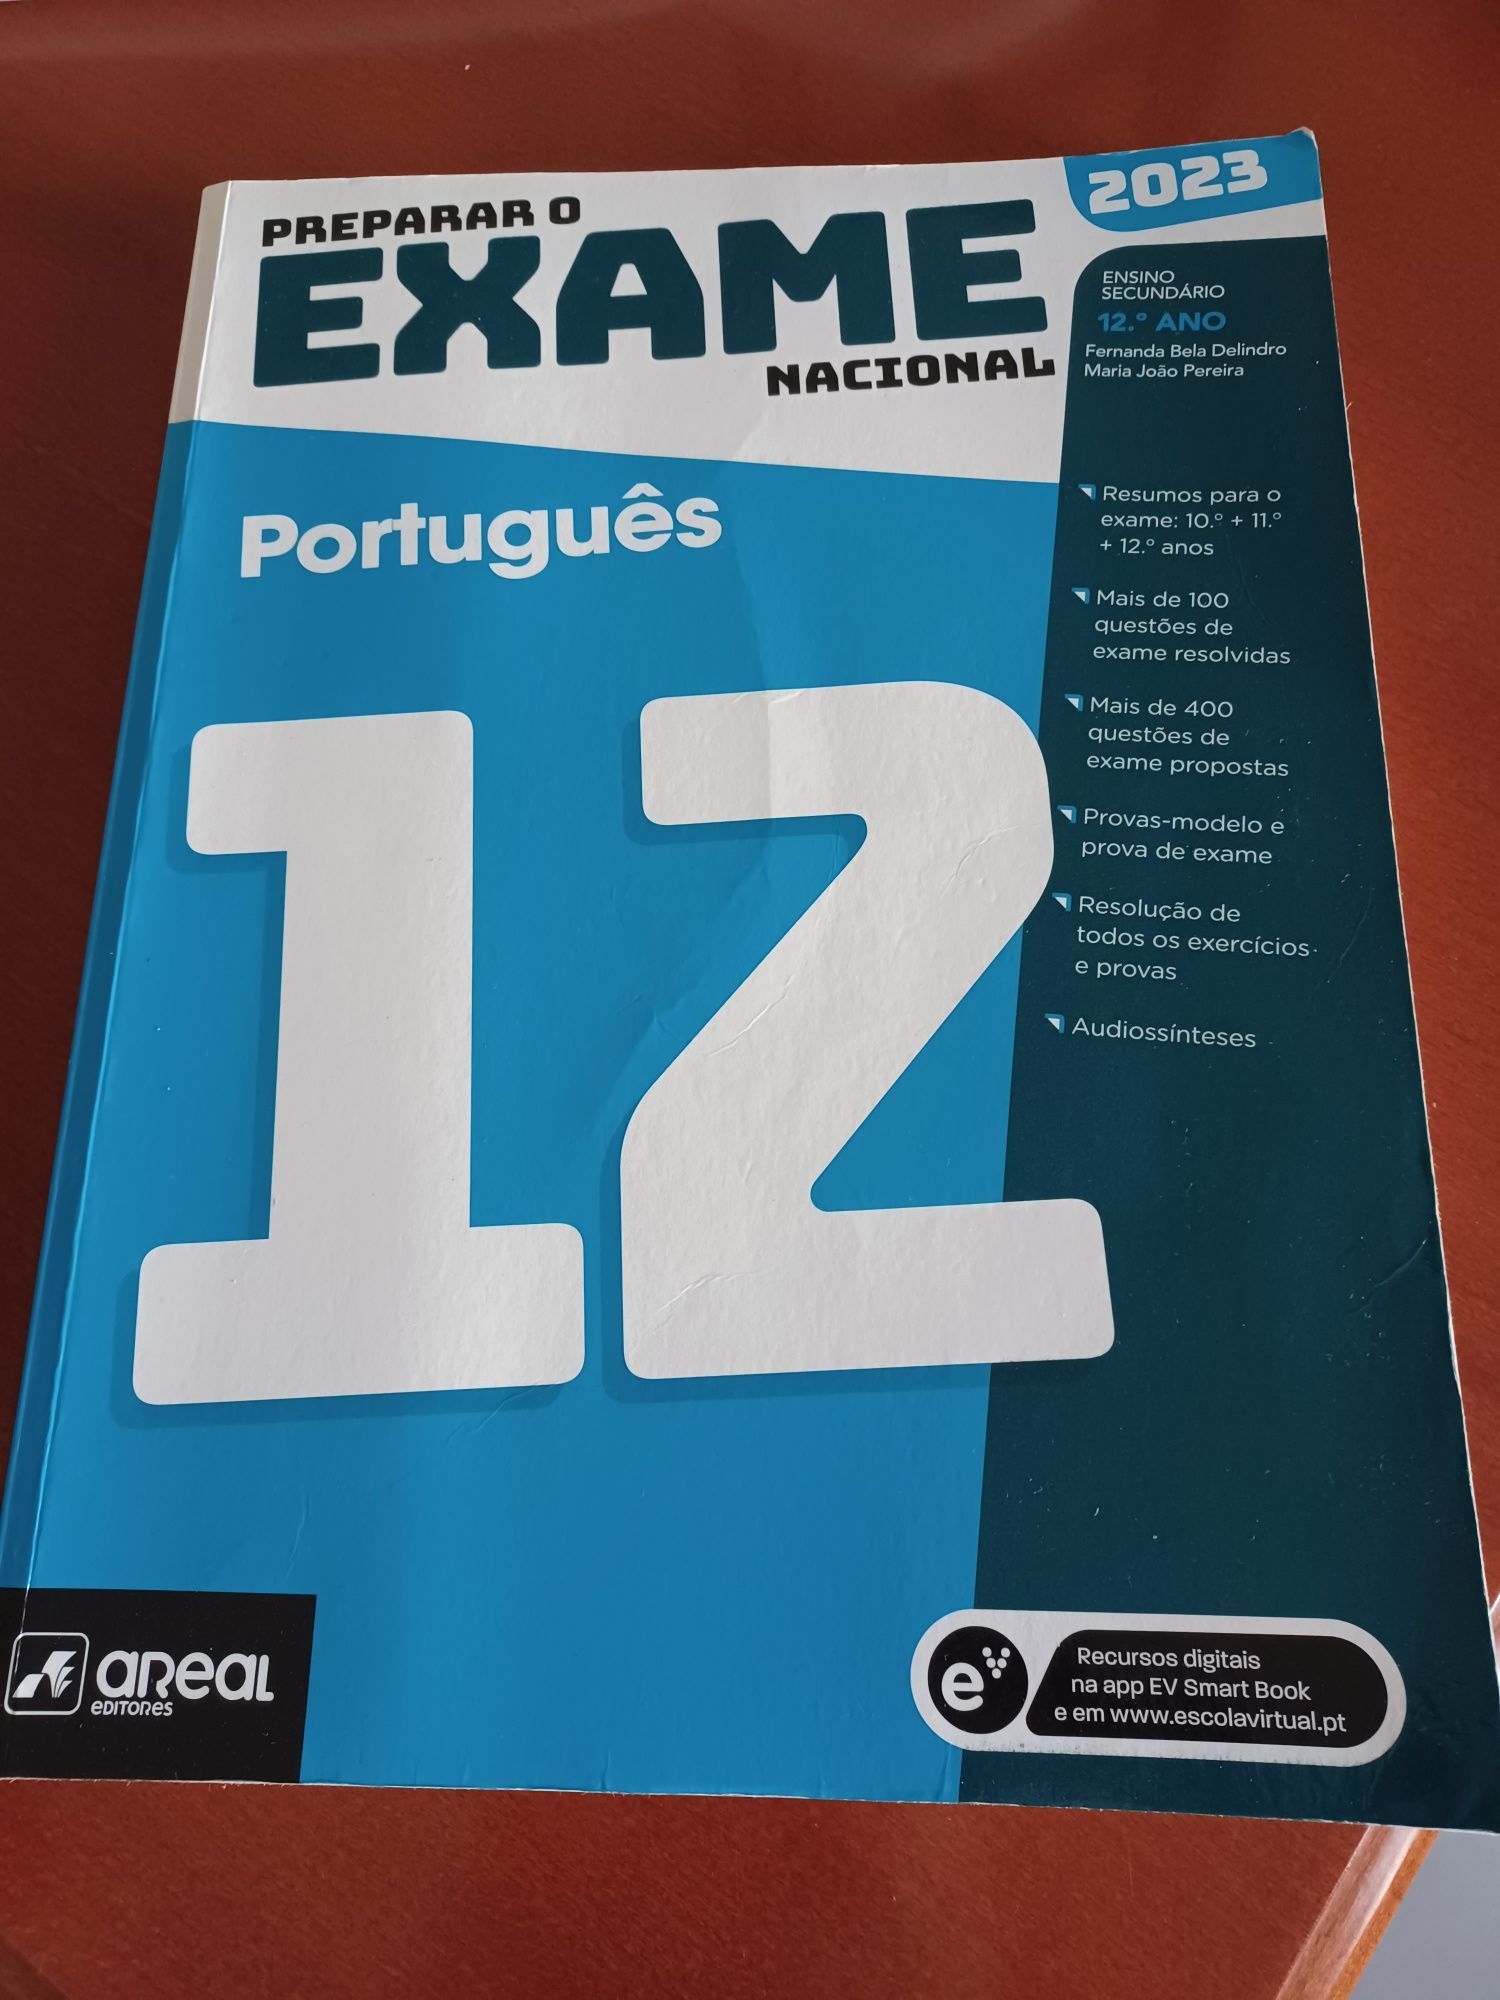 Manual preparação Exame Português. Pago portes CTT ou entrego em mãos.